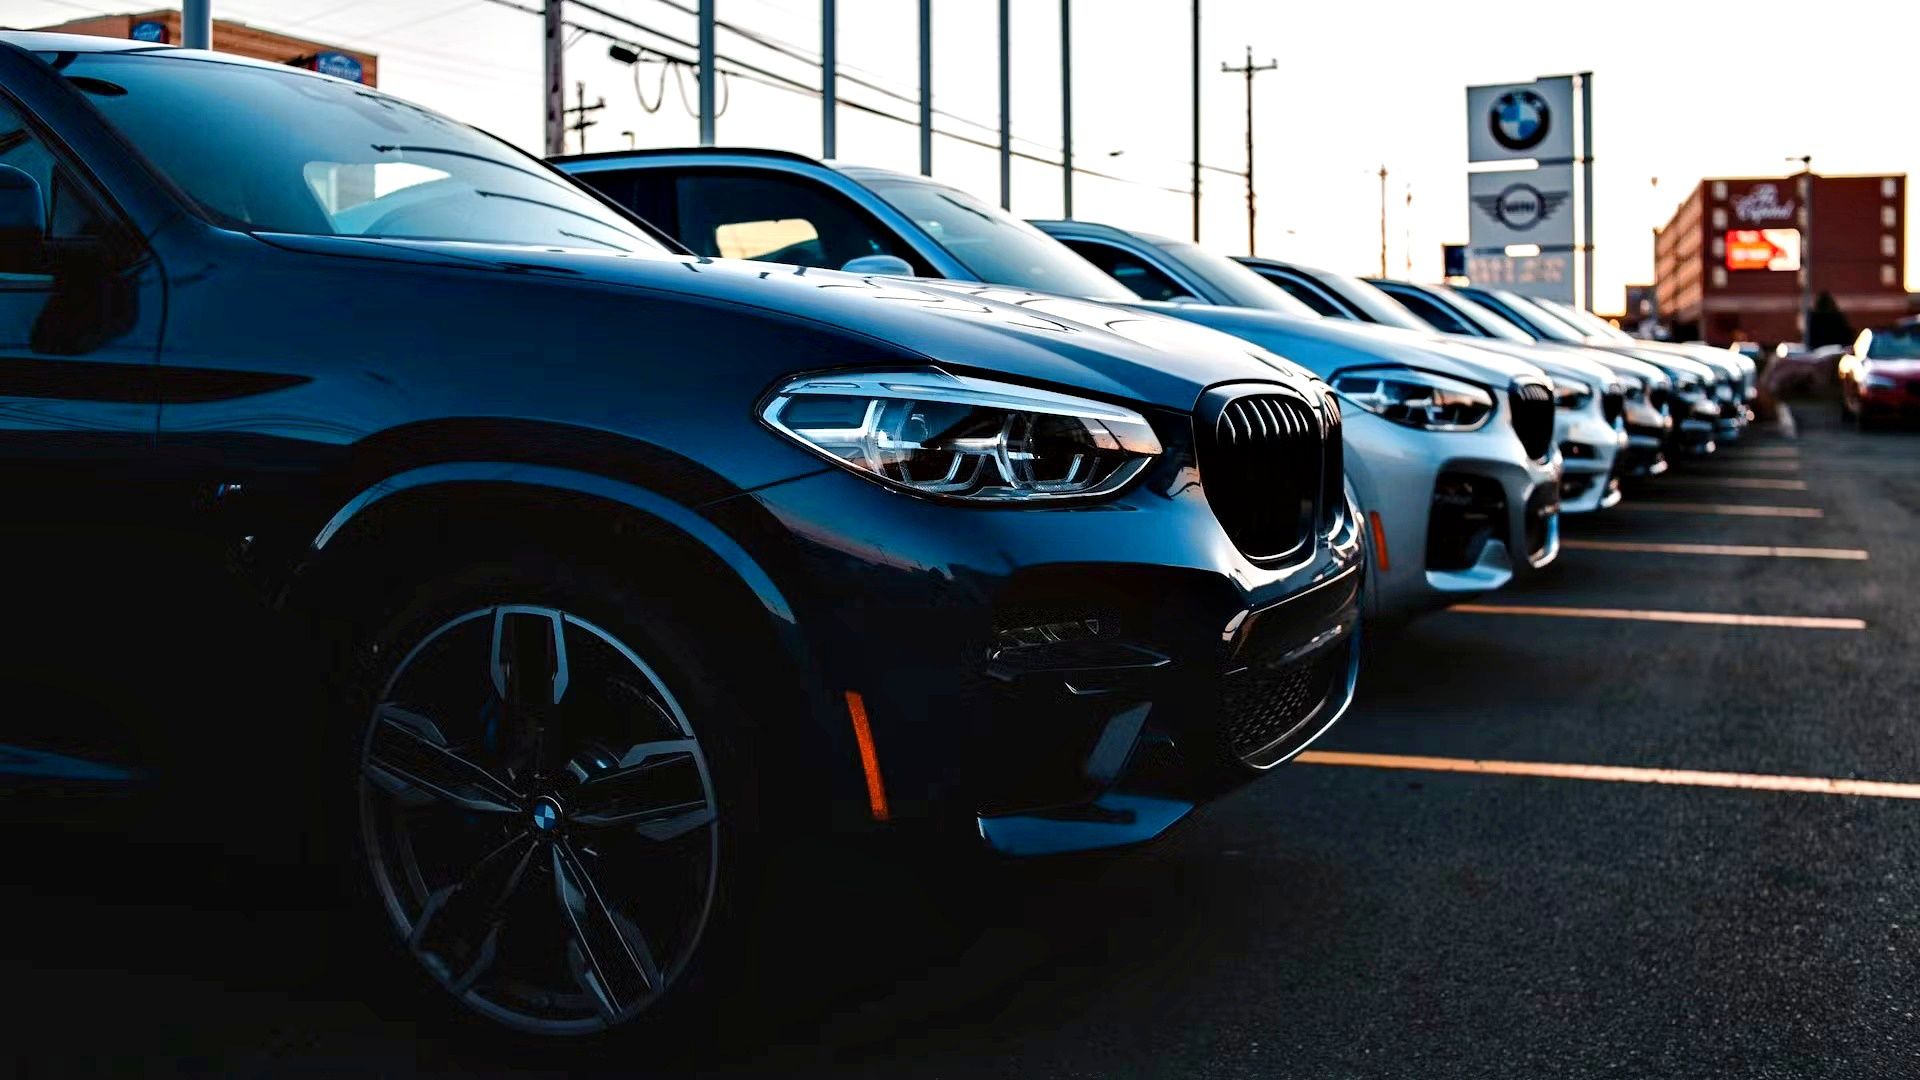 A row of BMWs